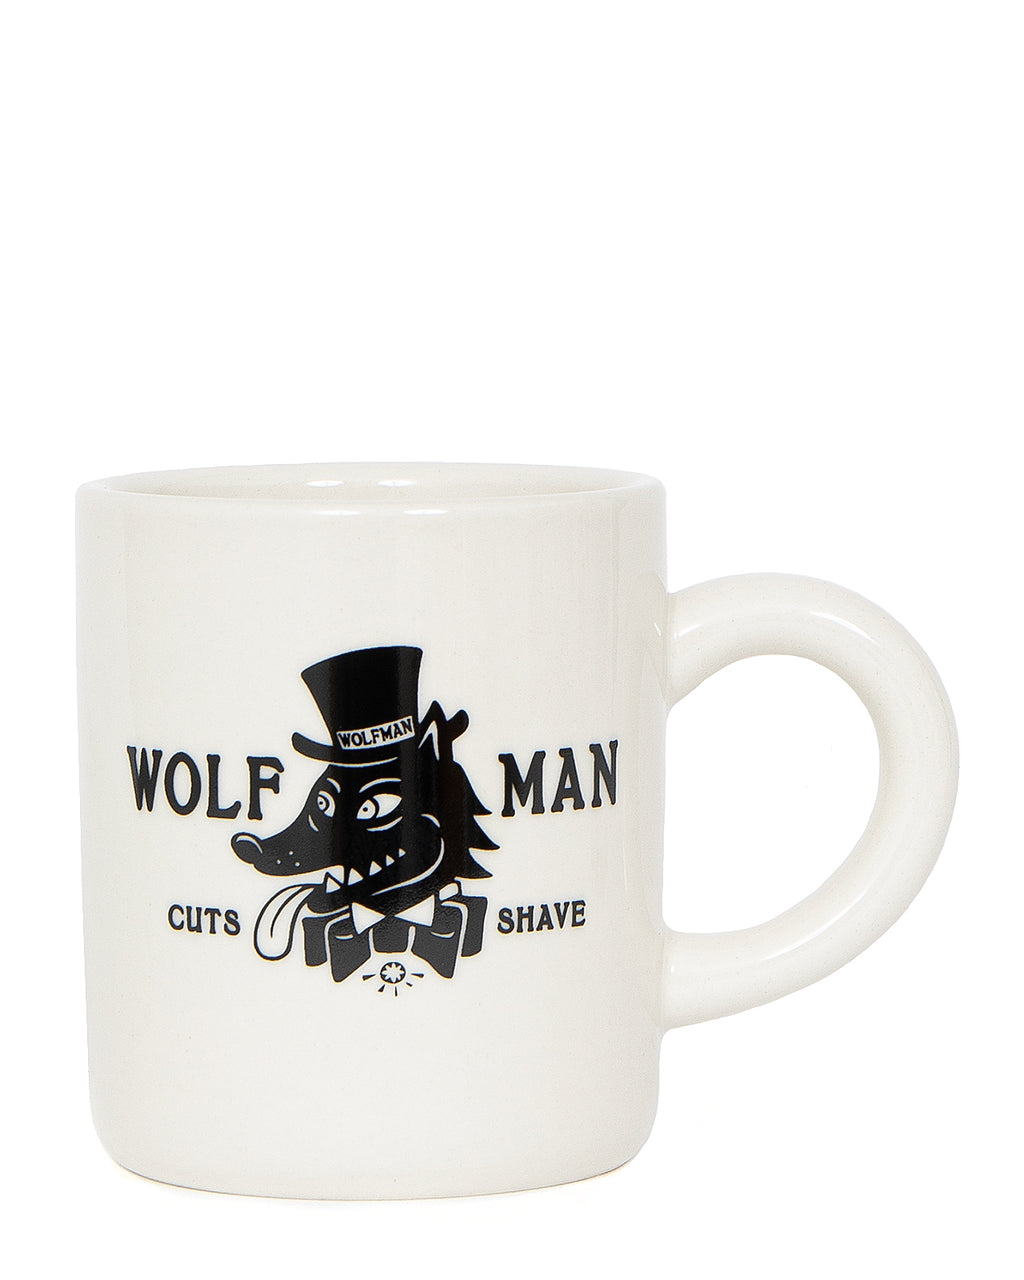 Wolfman Mug Cup